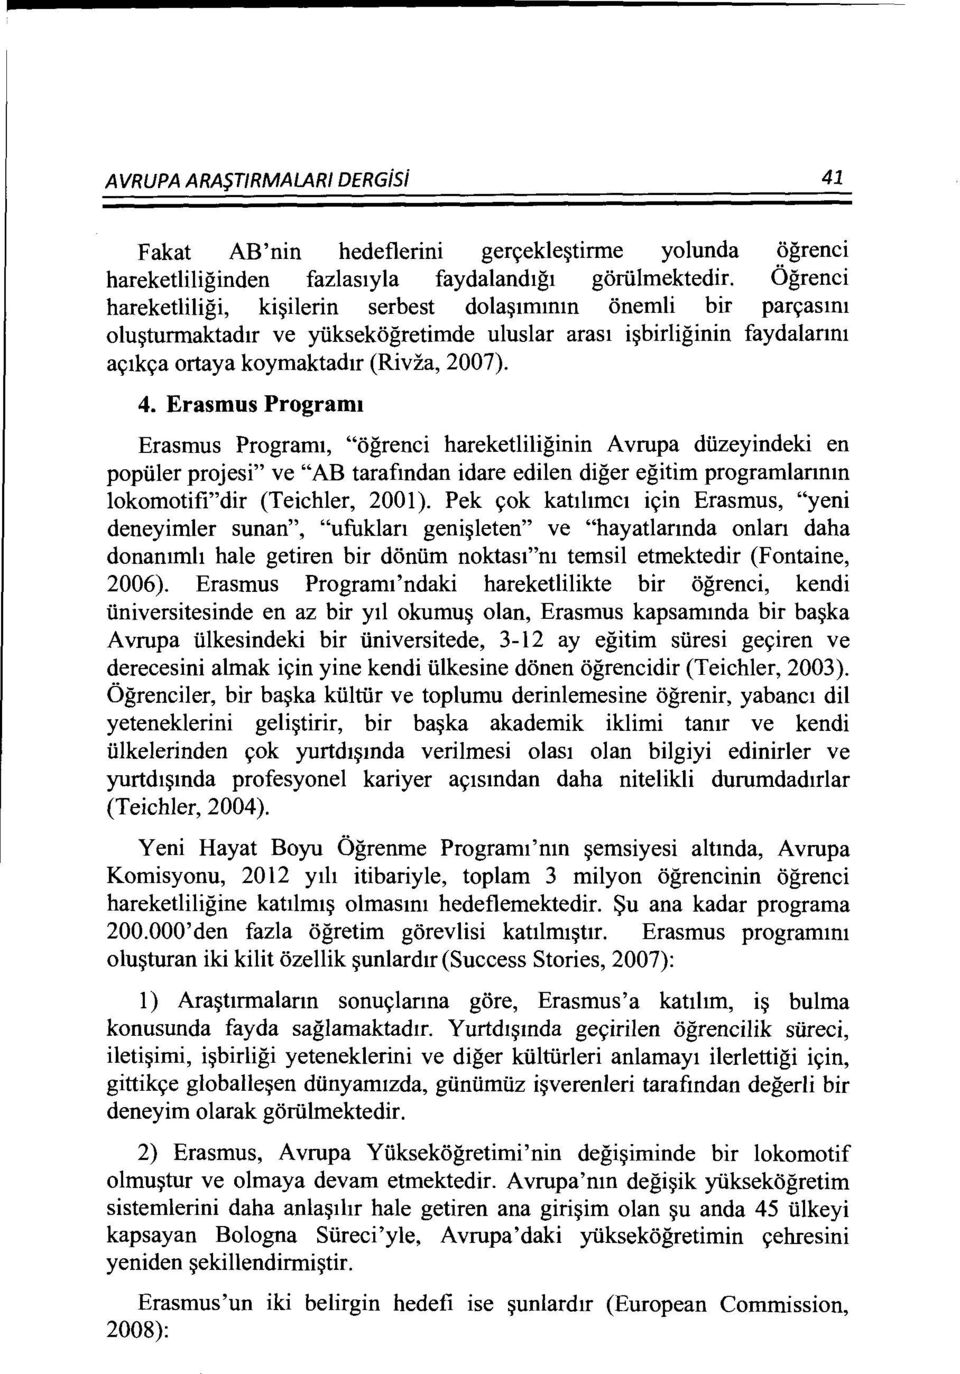 Erasmus Program Erasmus Program1, "ogrenci hareketliliginin A vrupa diizeyindeki en poptiler projesi" ve "AB tarafmdan idare edilen diger egitim programlannm lokomotifi"dir (Teichler, 2001).